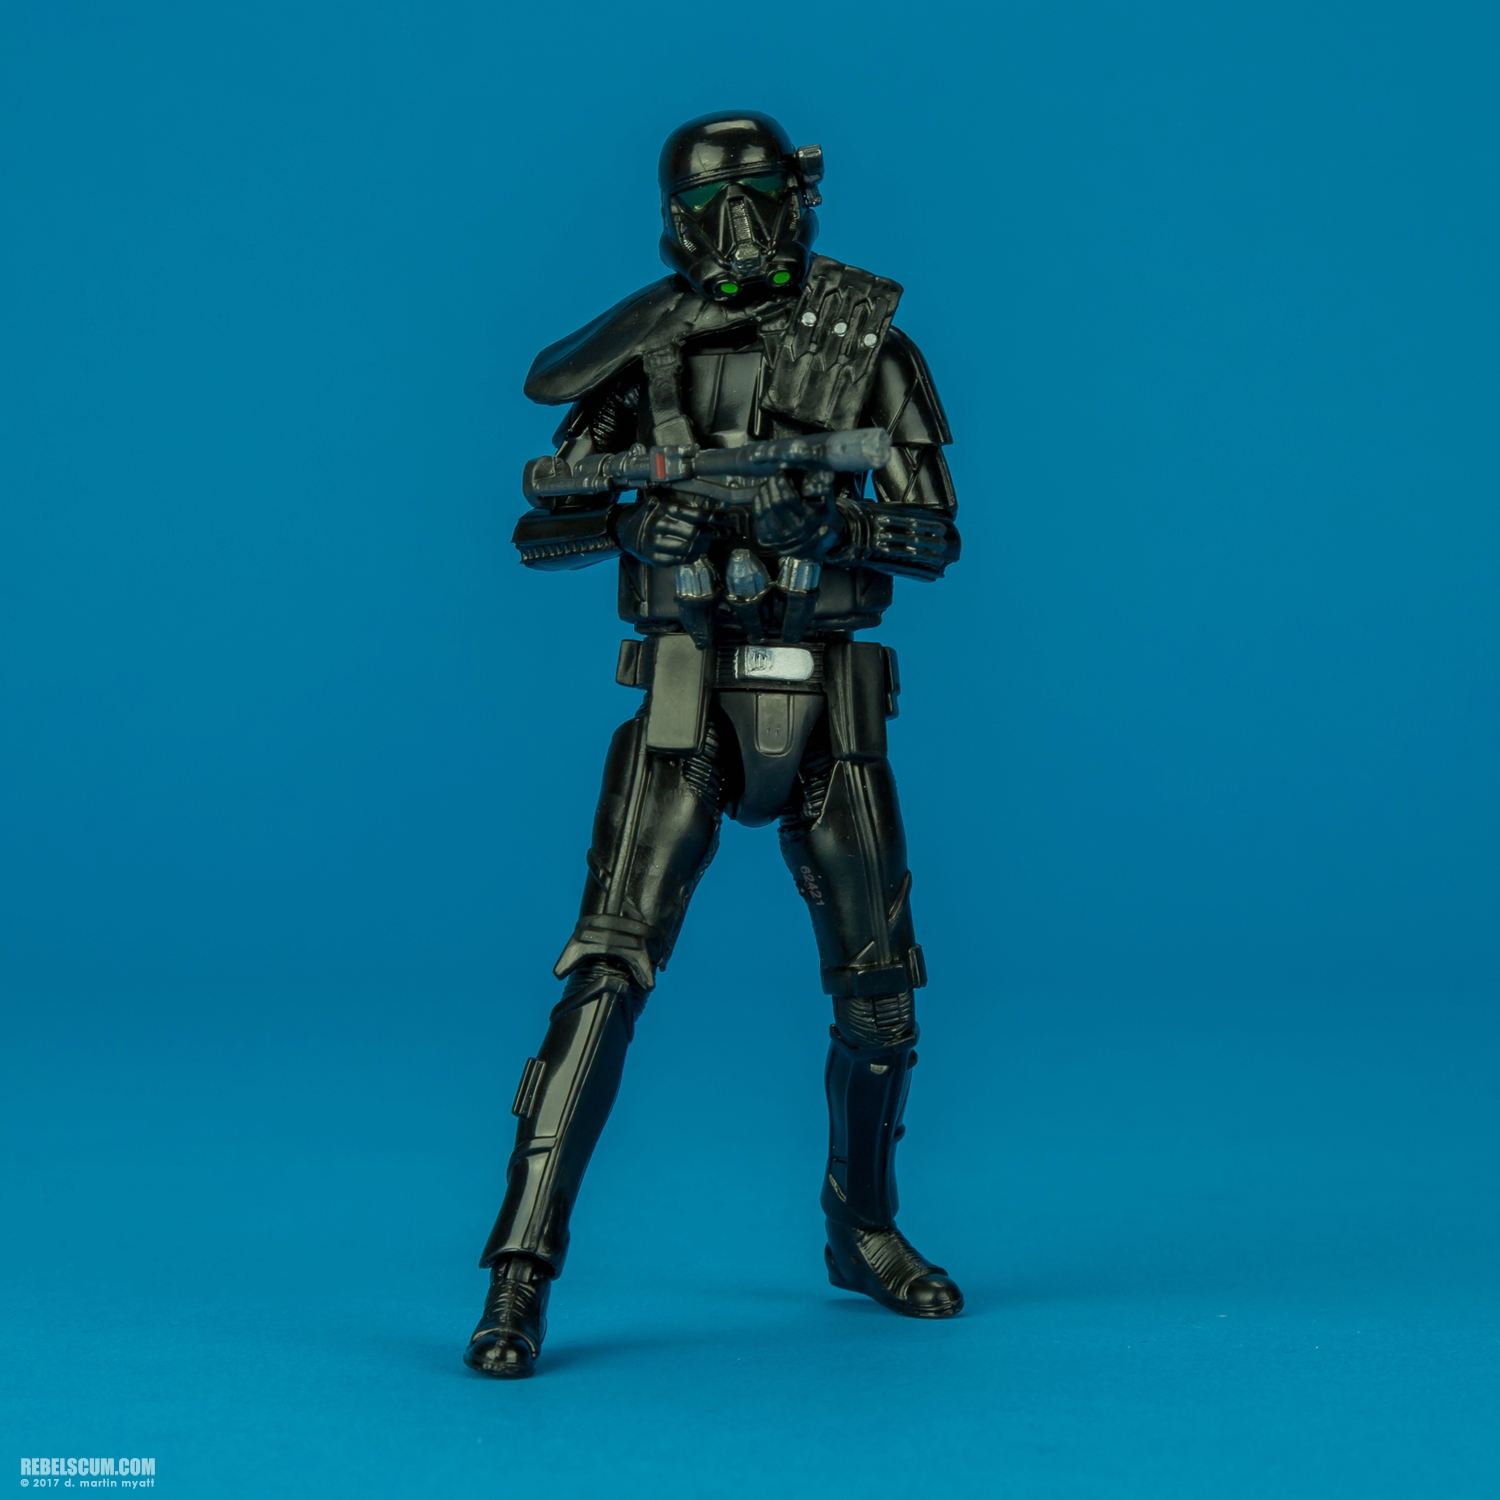 Imperial-Death-Trooper-The-Black-Series-C0663-B4054-012.jpg